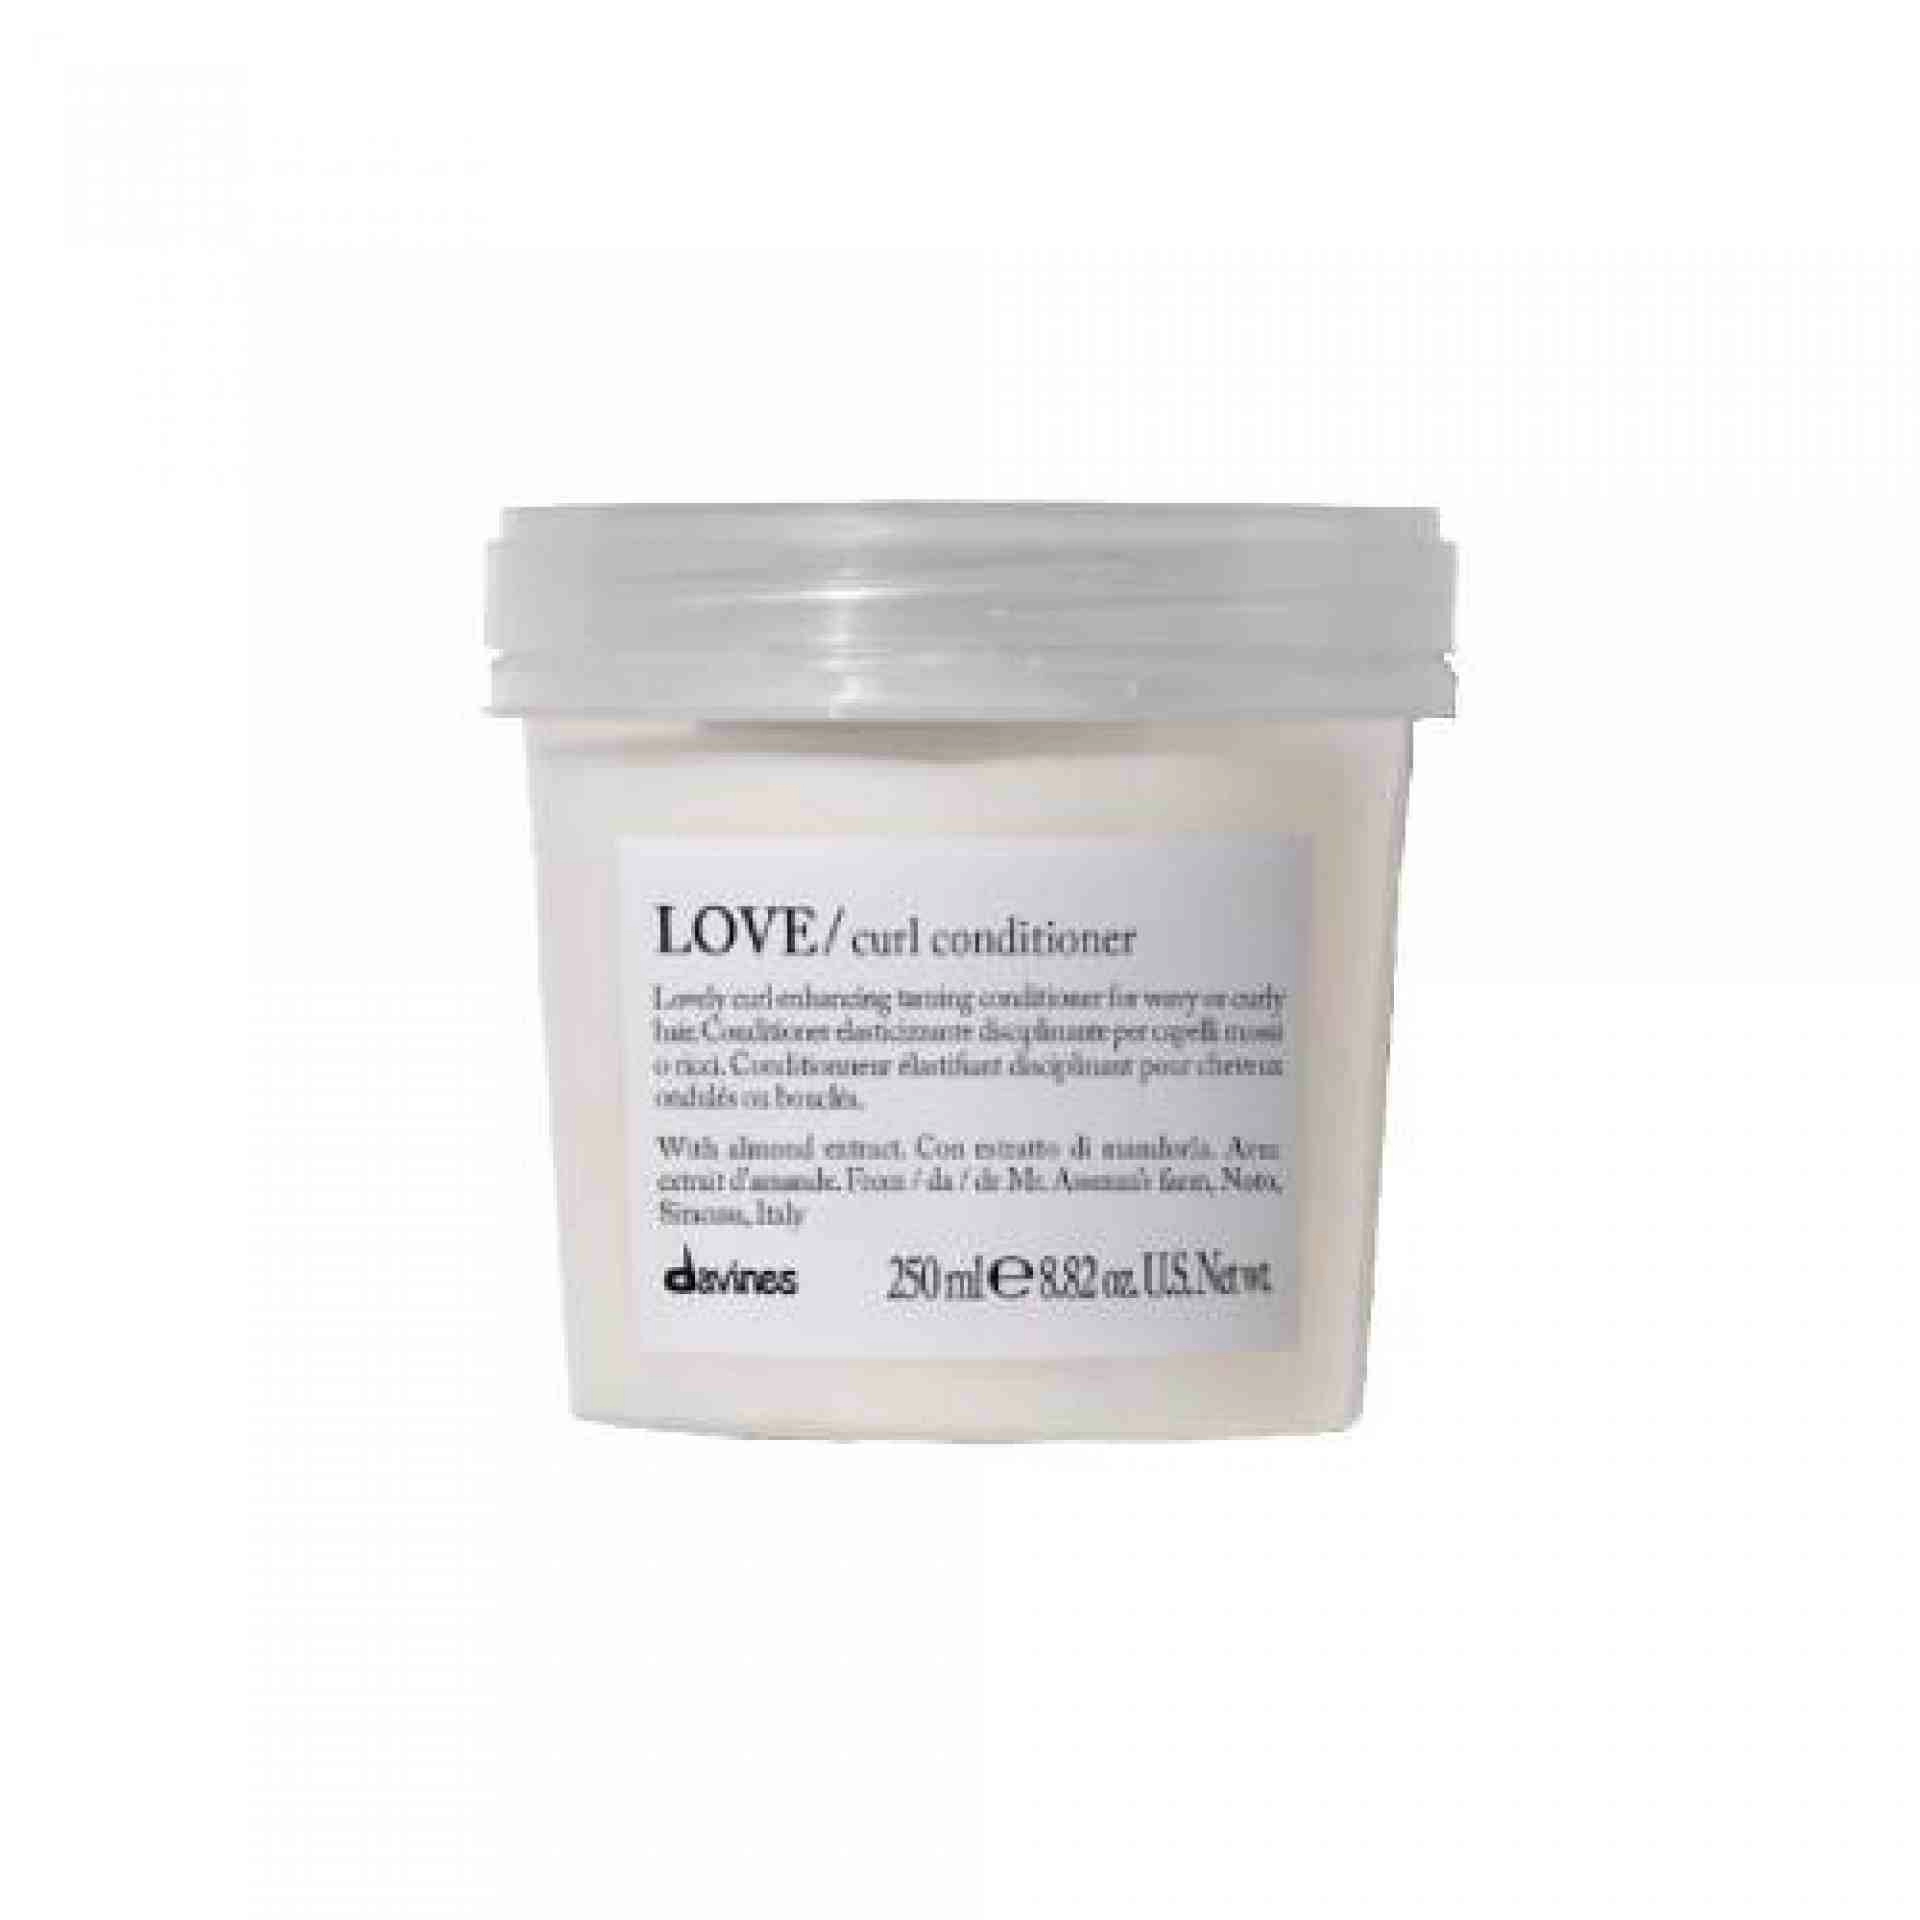 LOVE CURL / Conditioner | Acondicionador voluminizador - Essential Haircare - Davines ®